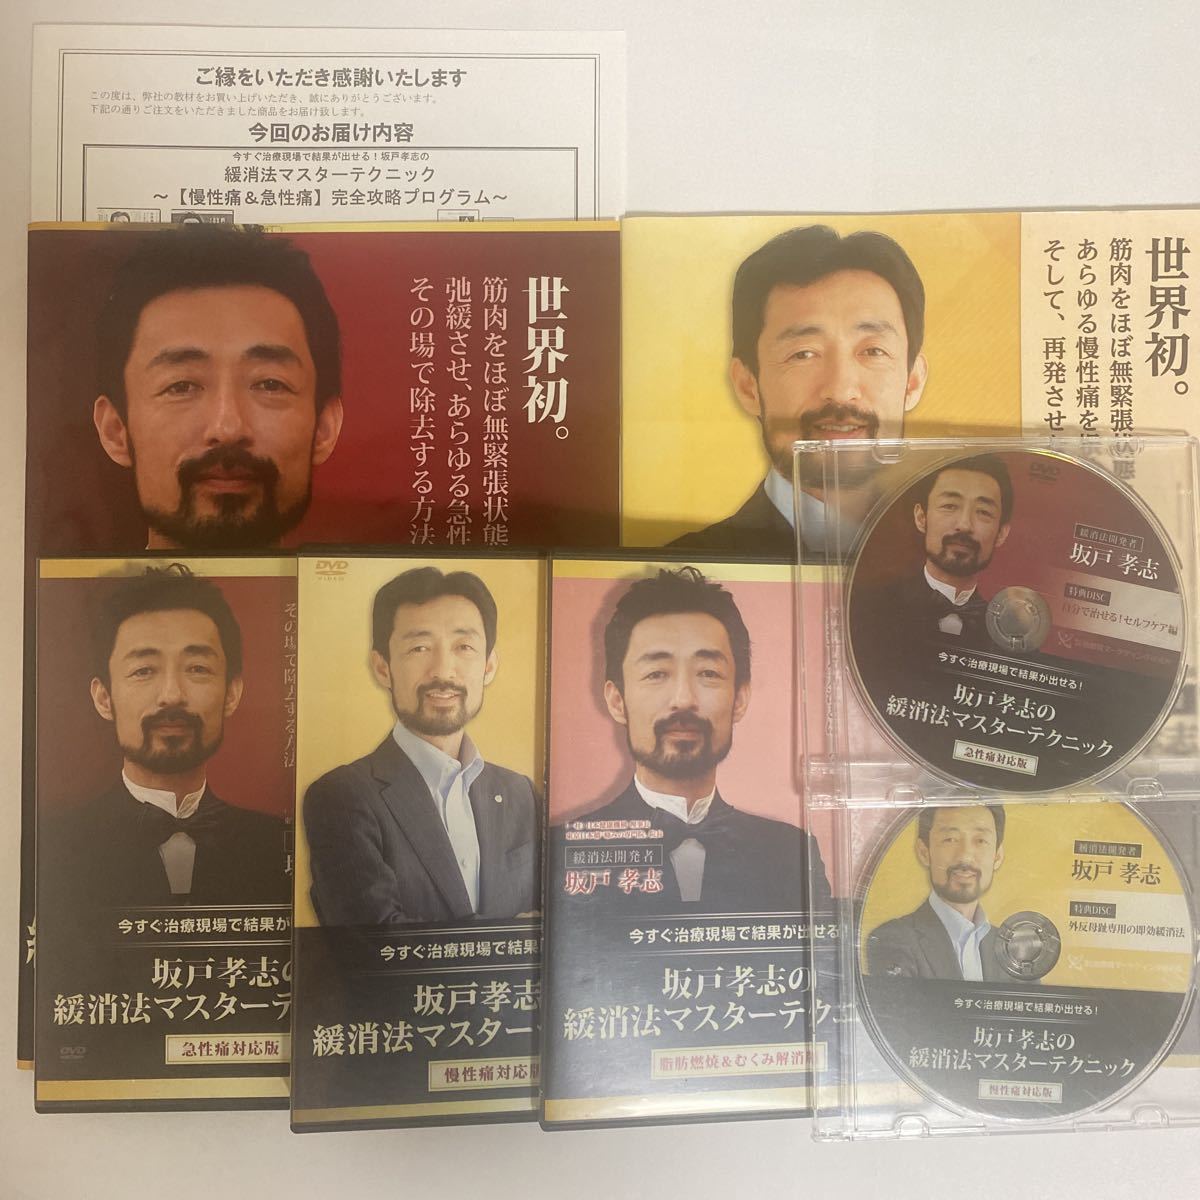 フルセット!整体DVD【坂戸孝志の緩消法マスターテクニック 急性痛対応 